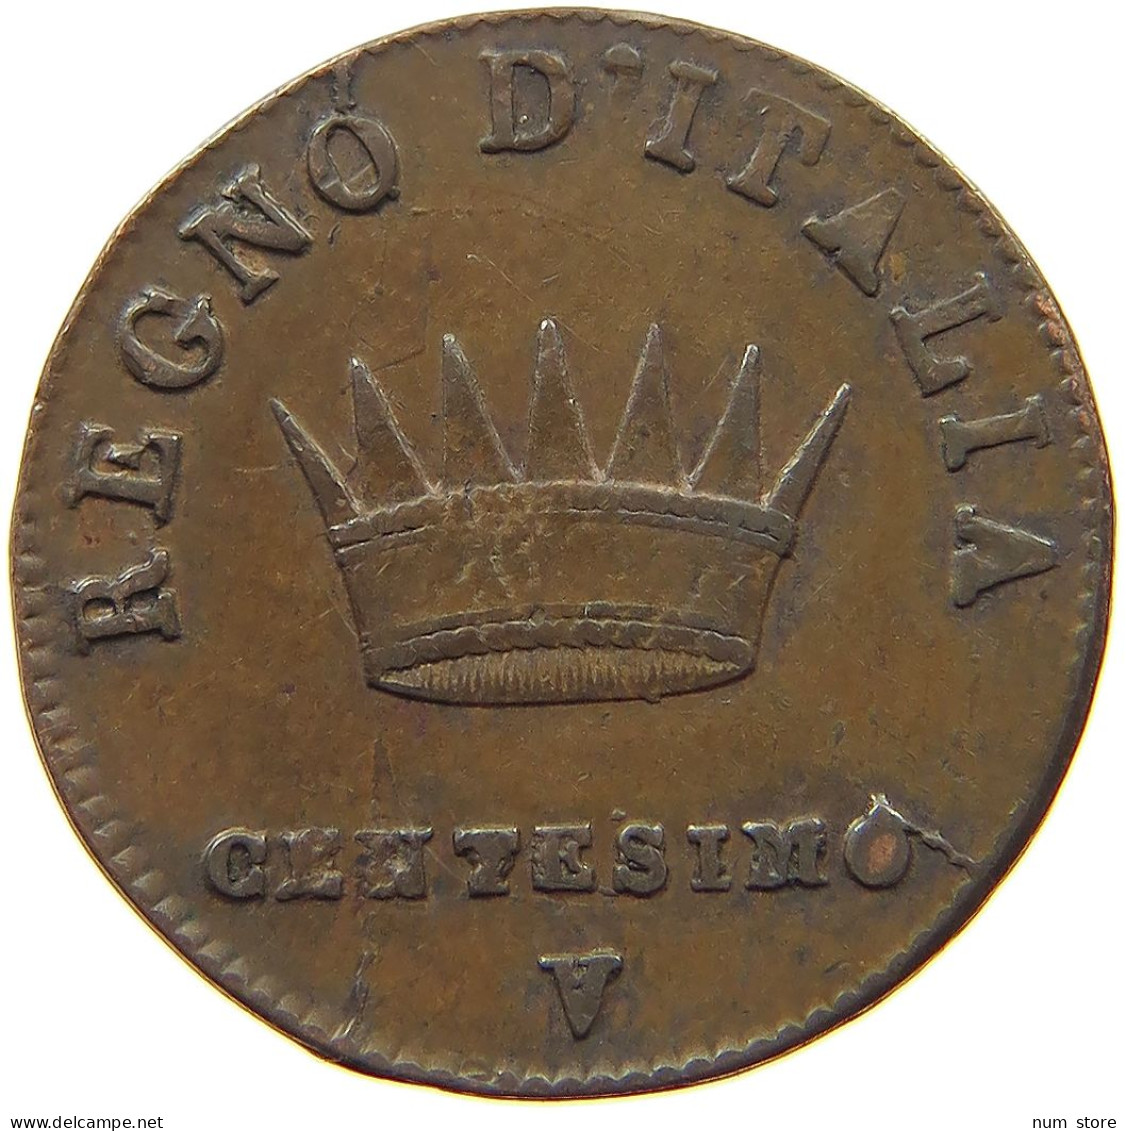 ITALY STATES NAPOLEON I. CENTESIMO 1809 V Napoleon I. (1804-1814, 1815) #t149 0309 - Napoleonic